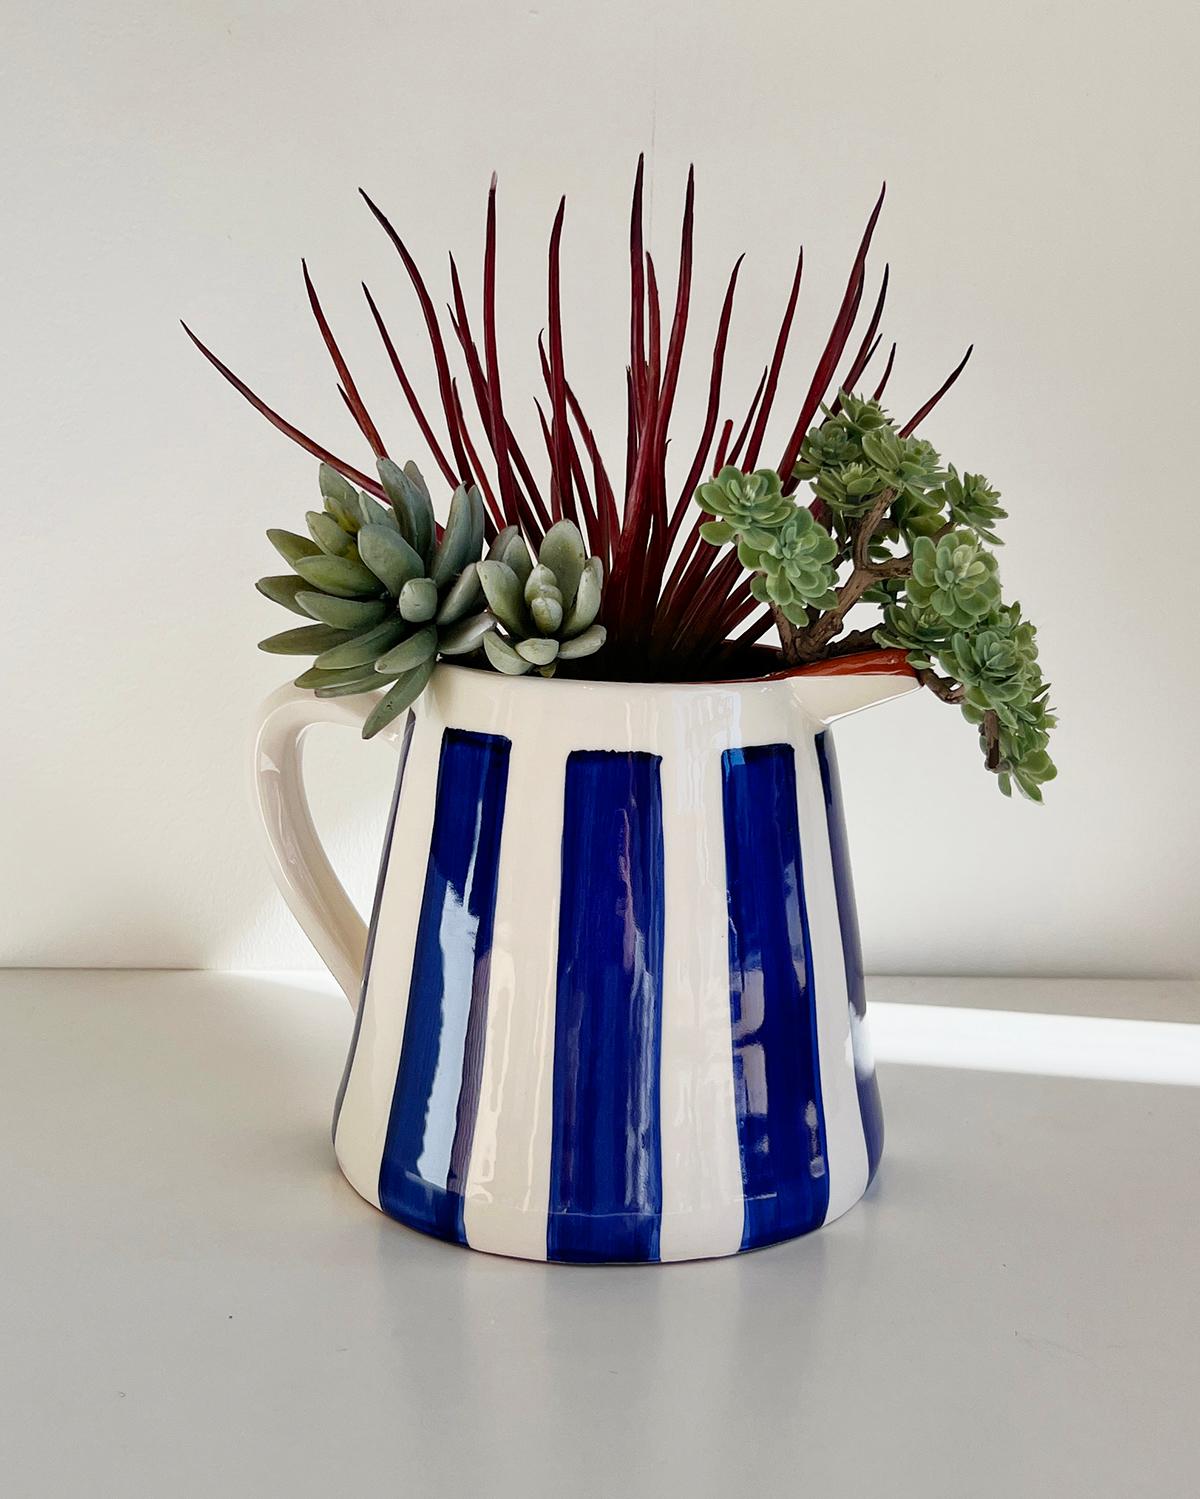 Dieser wunderschöne gestreifte Terrakotta-Krug ist das perfekte Gefäß für Ihre nächste Dinnerparty. Dieser Krug eignet sich hervorragend als Blumenvase oder als Festtags- oder Hochzeitsgeschenk und kann alles von Zweigen über Blumen bis hin zu